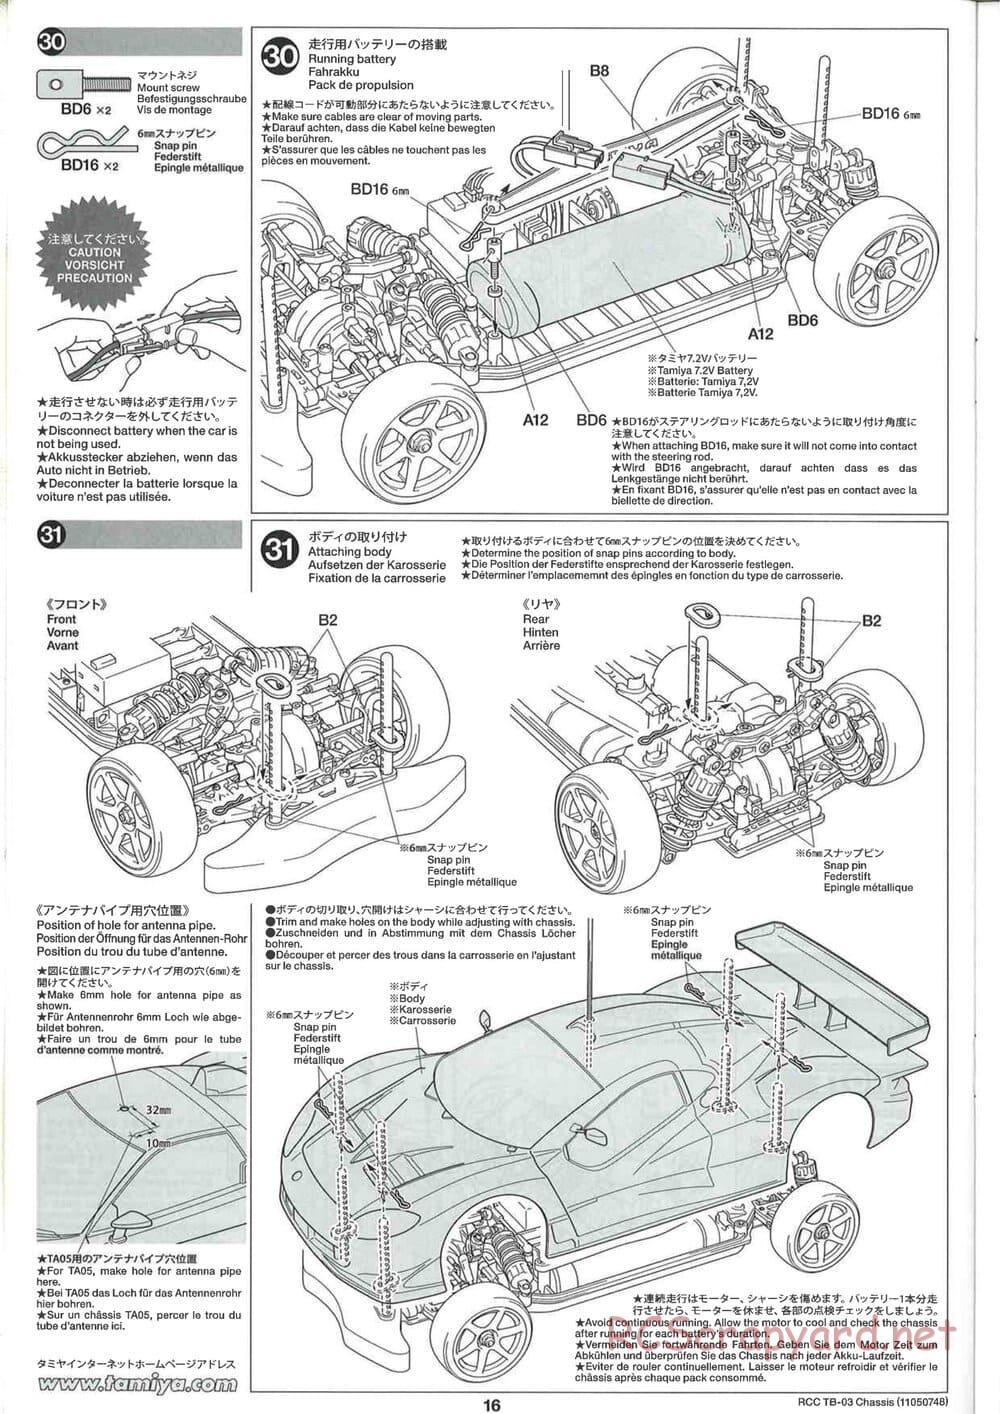 Tamiya - TB-03 Chassis - Manual - Page 16